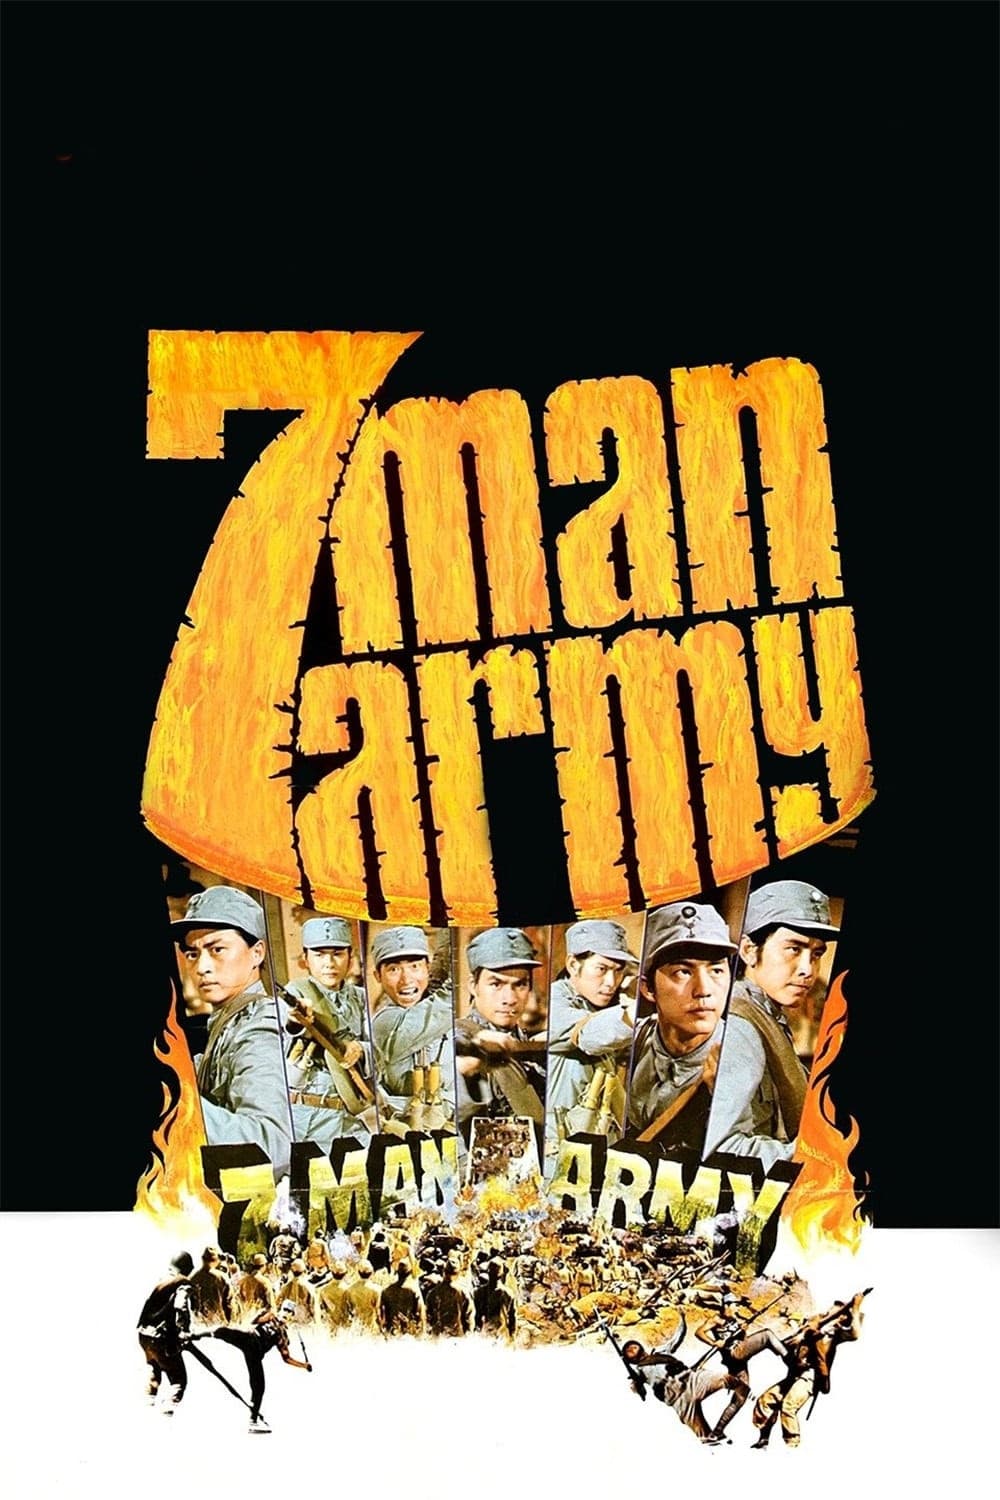 7-Man Army (1976)